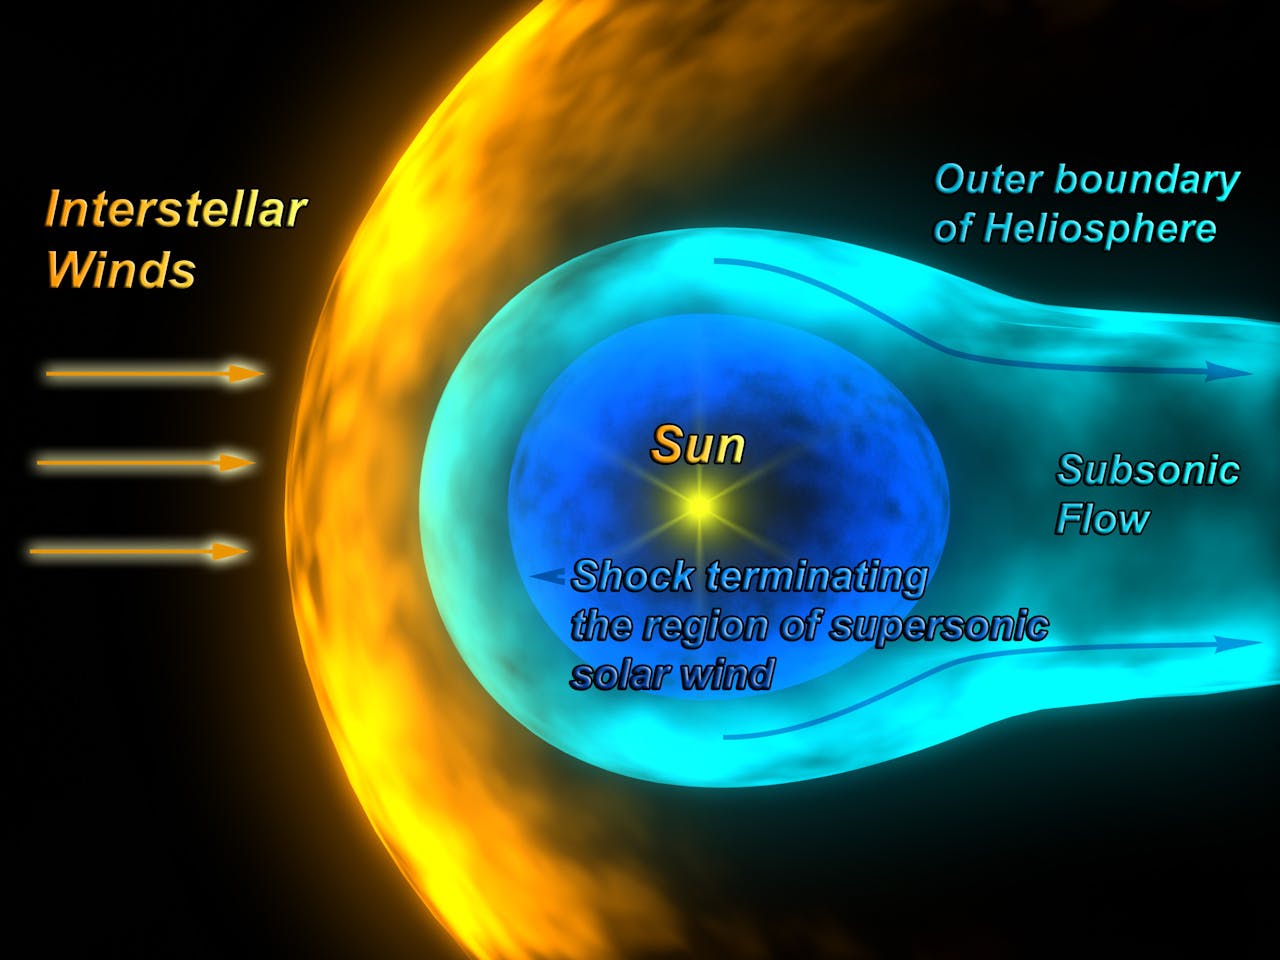 De heliosfeer geeft het gebied weer waar de stroom geladen deeltjes uit de zon domineert over de stroom geladen deeltjes uit de interstellaire ruimte.